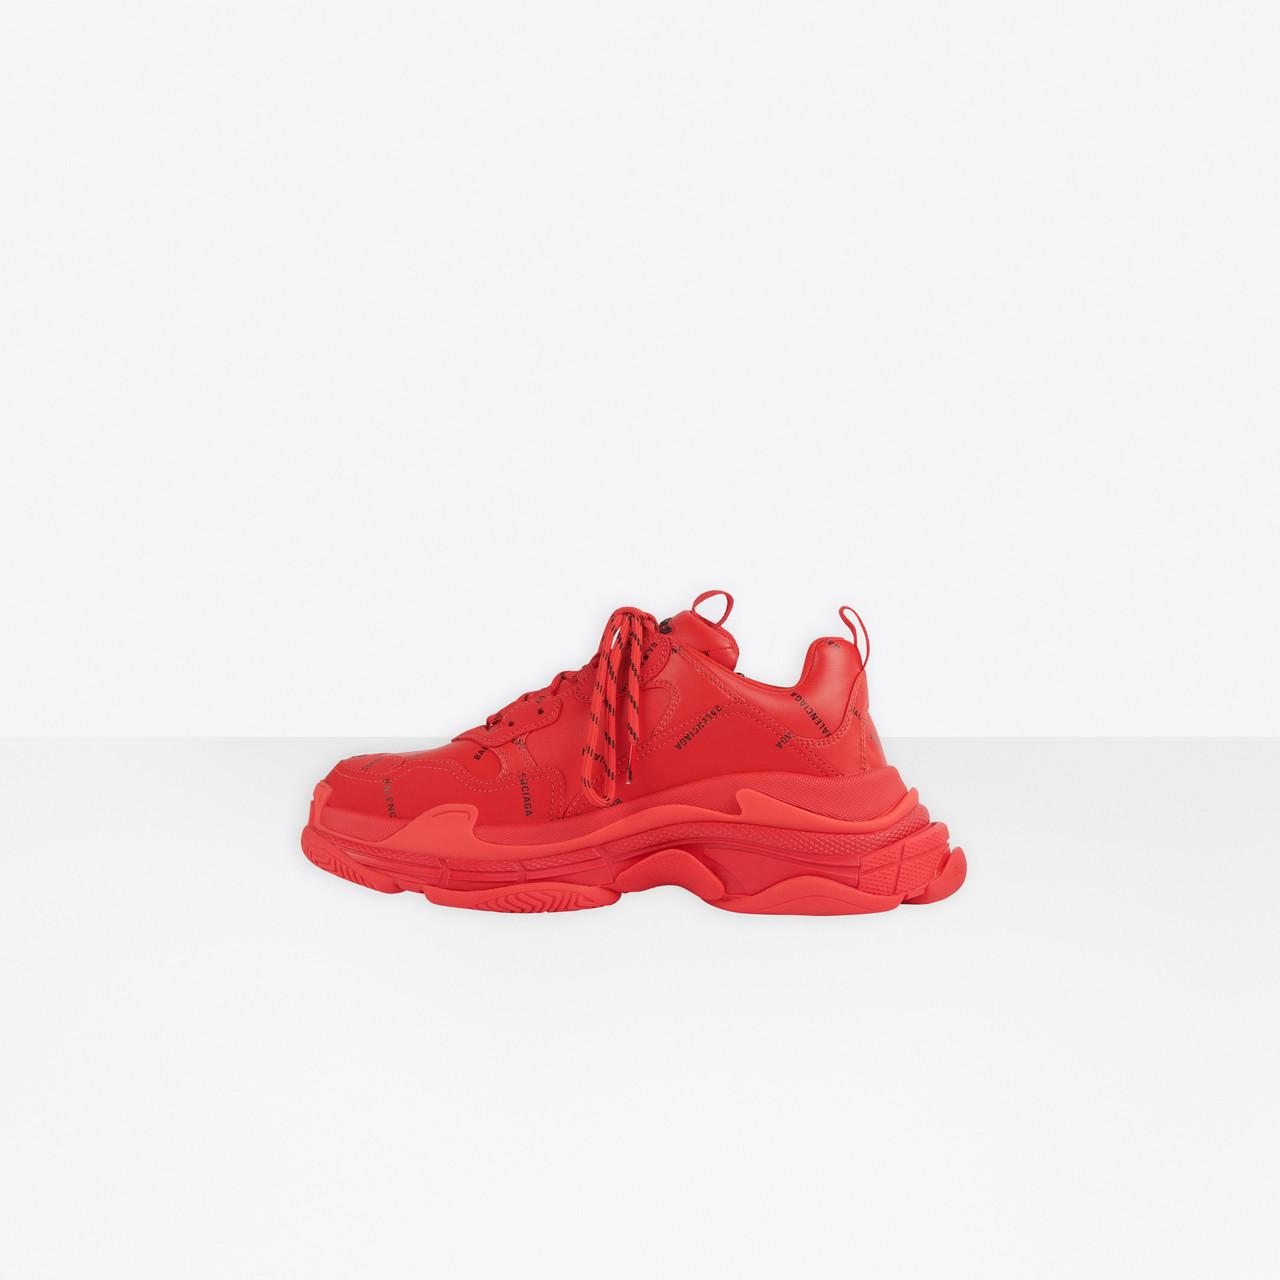 balenciaga shoes all red